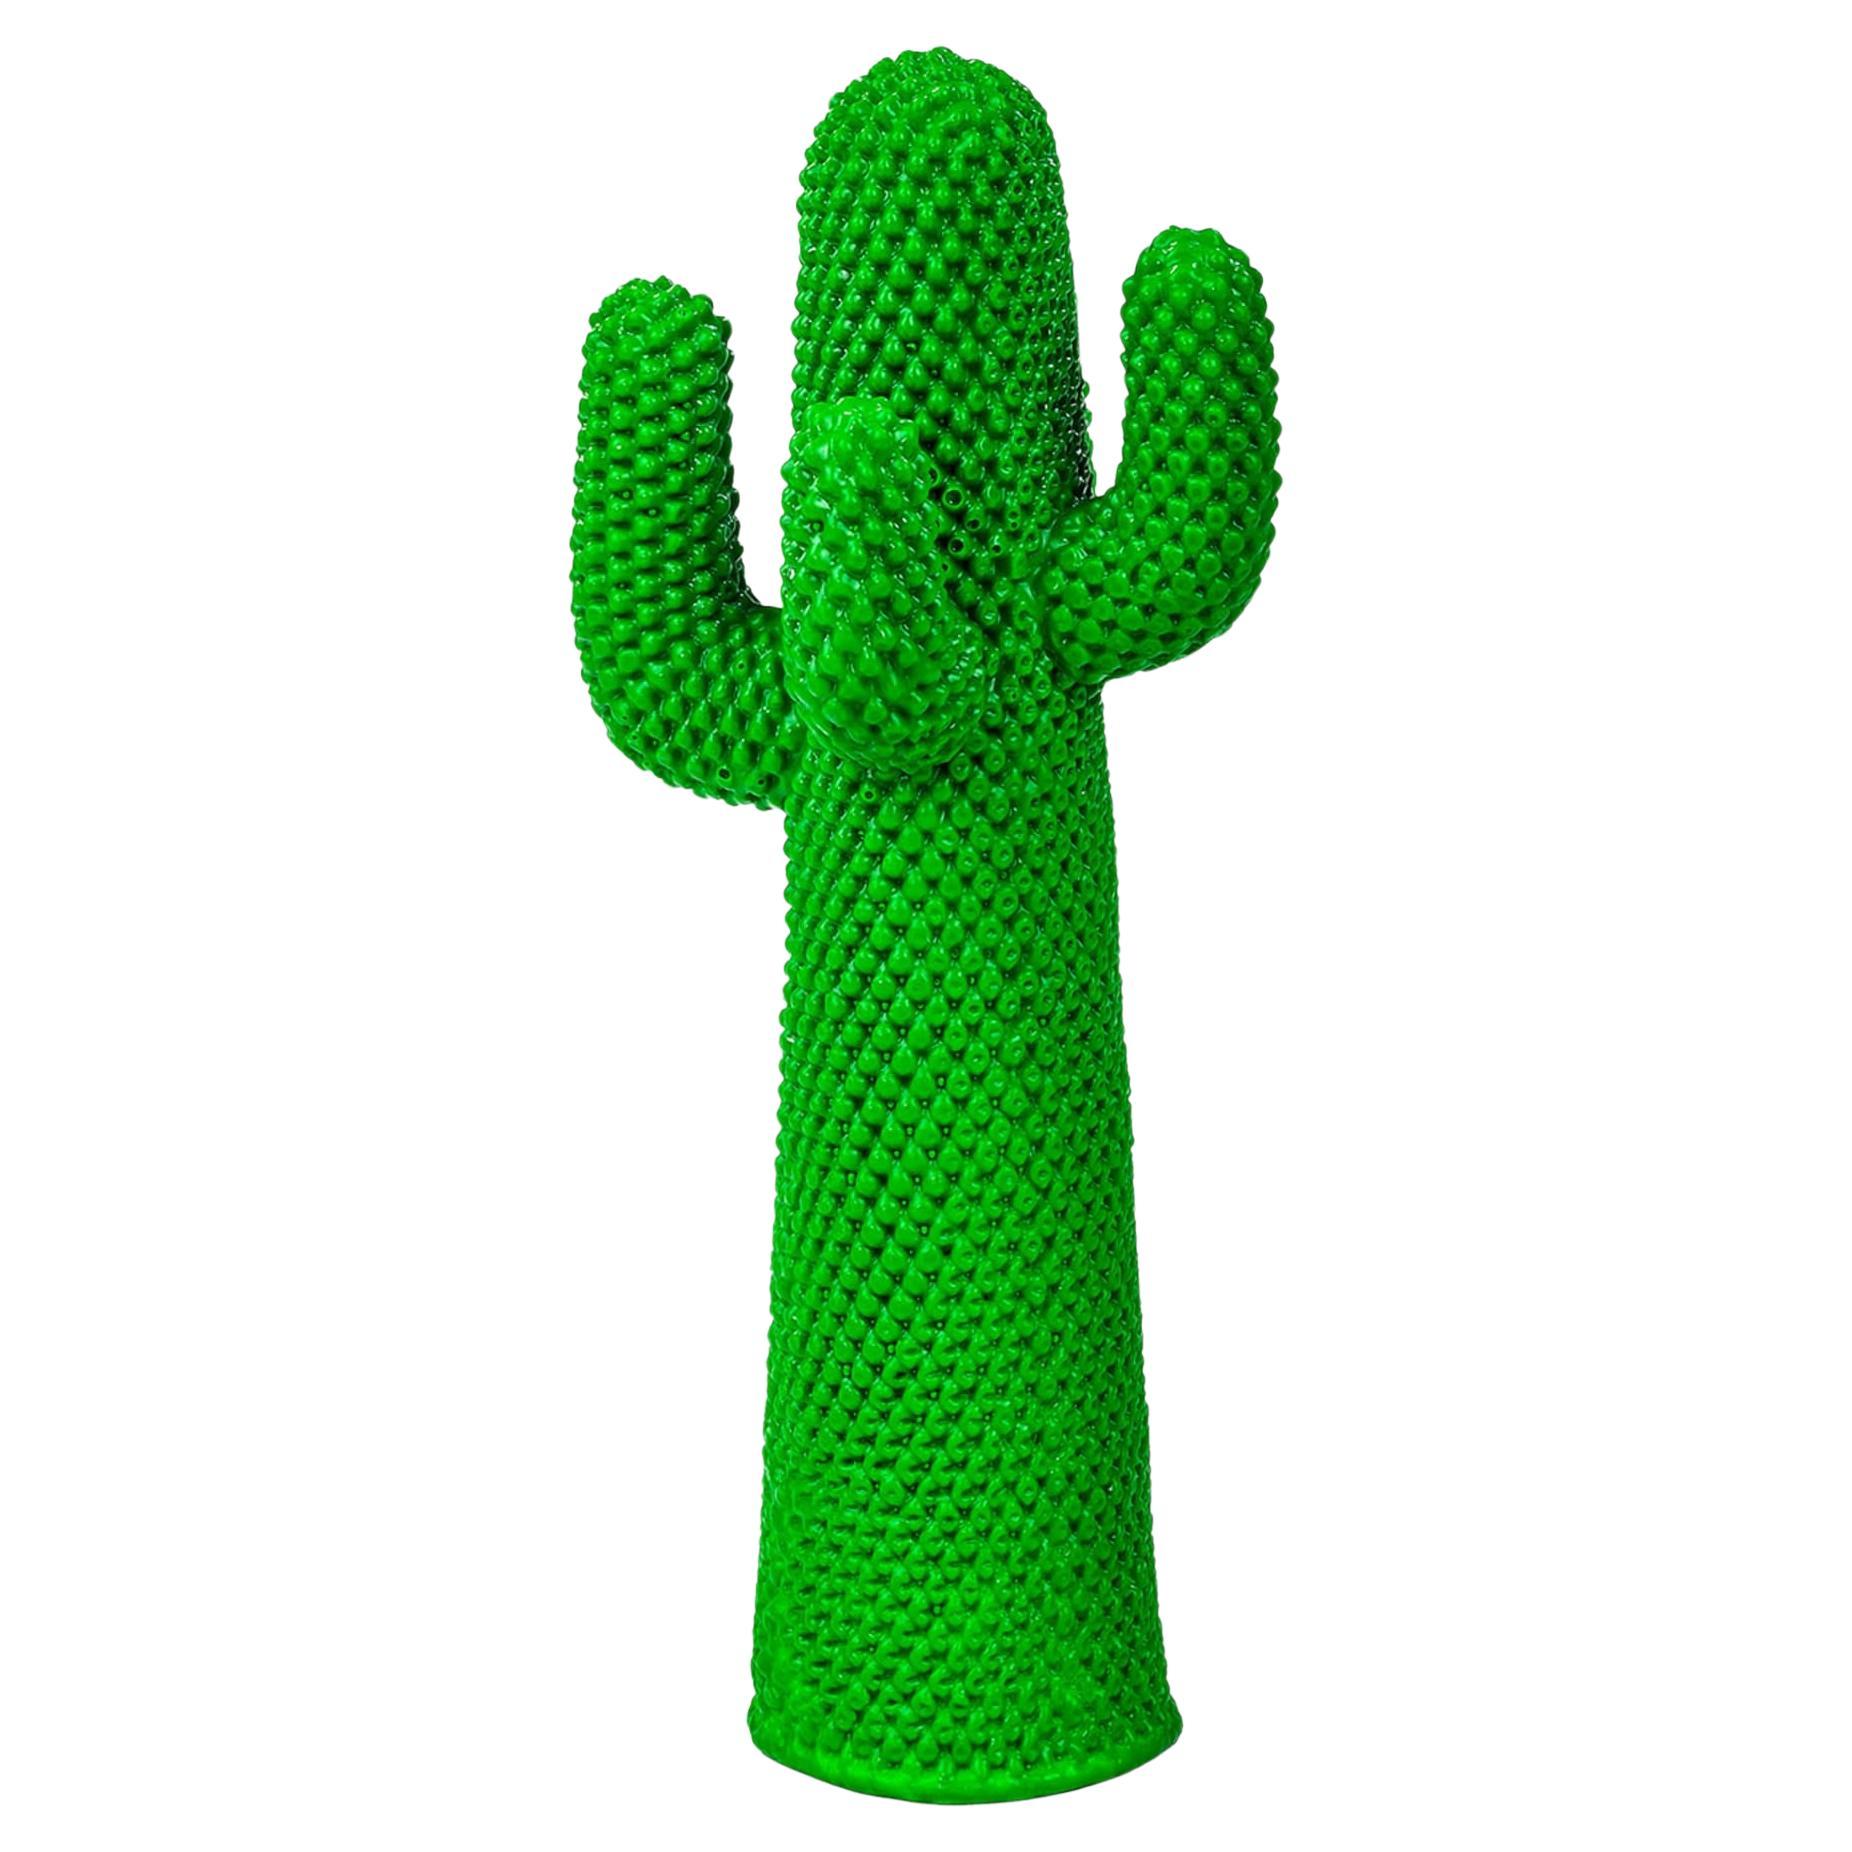 Guframini Cactus For Sale